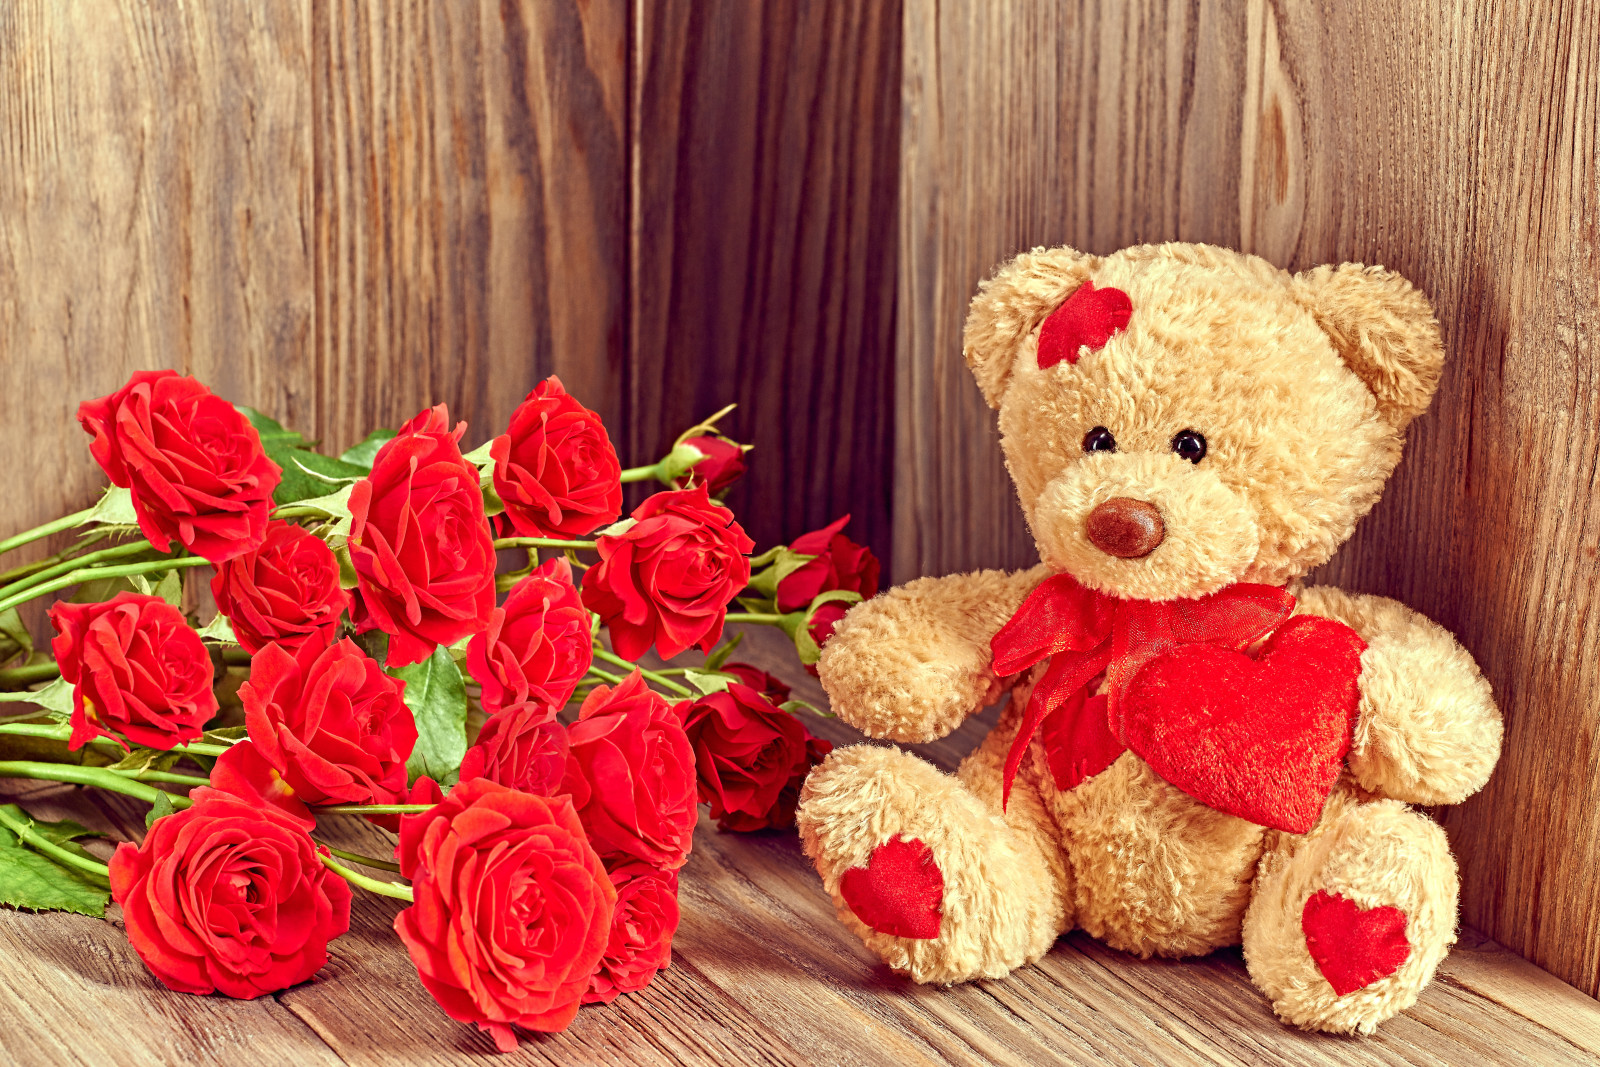 爱, 浪漫, 情人节, 礼品, 玫瑰花, 熊, 心, 泰迪熊